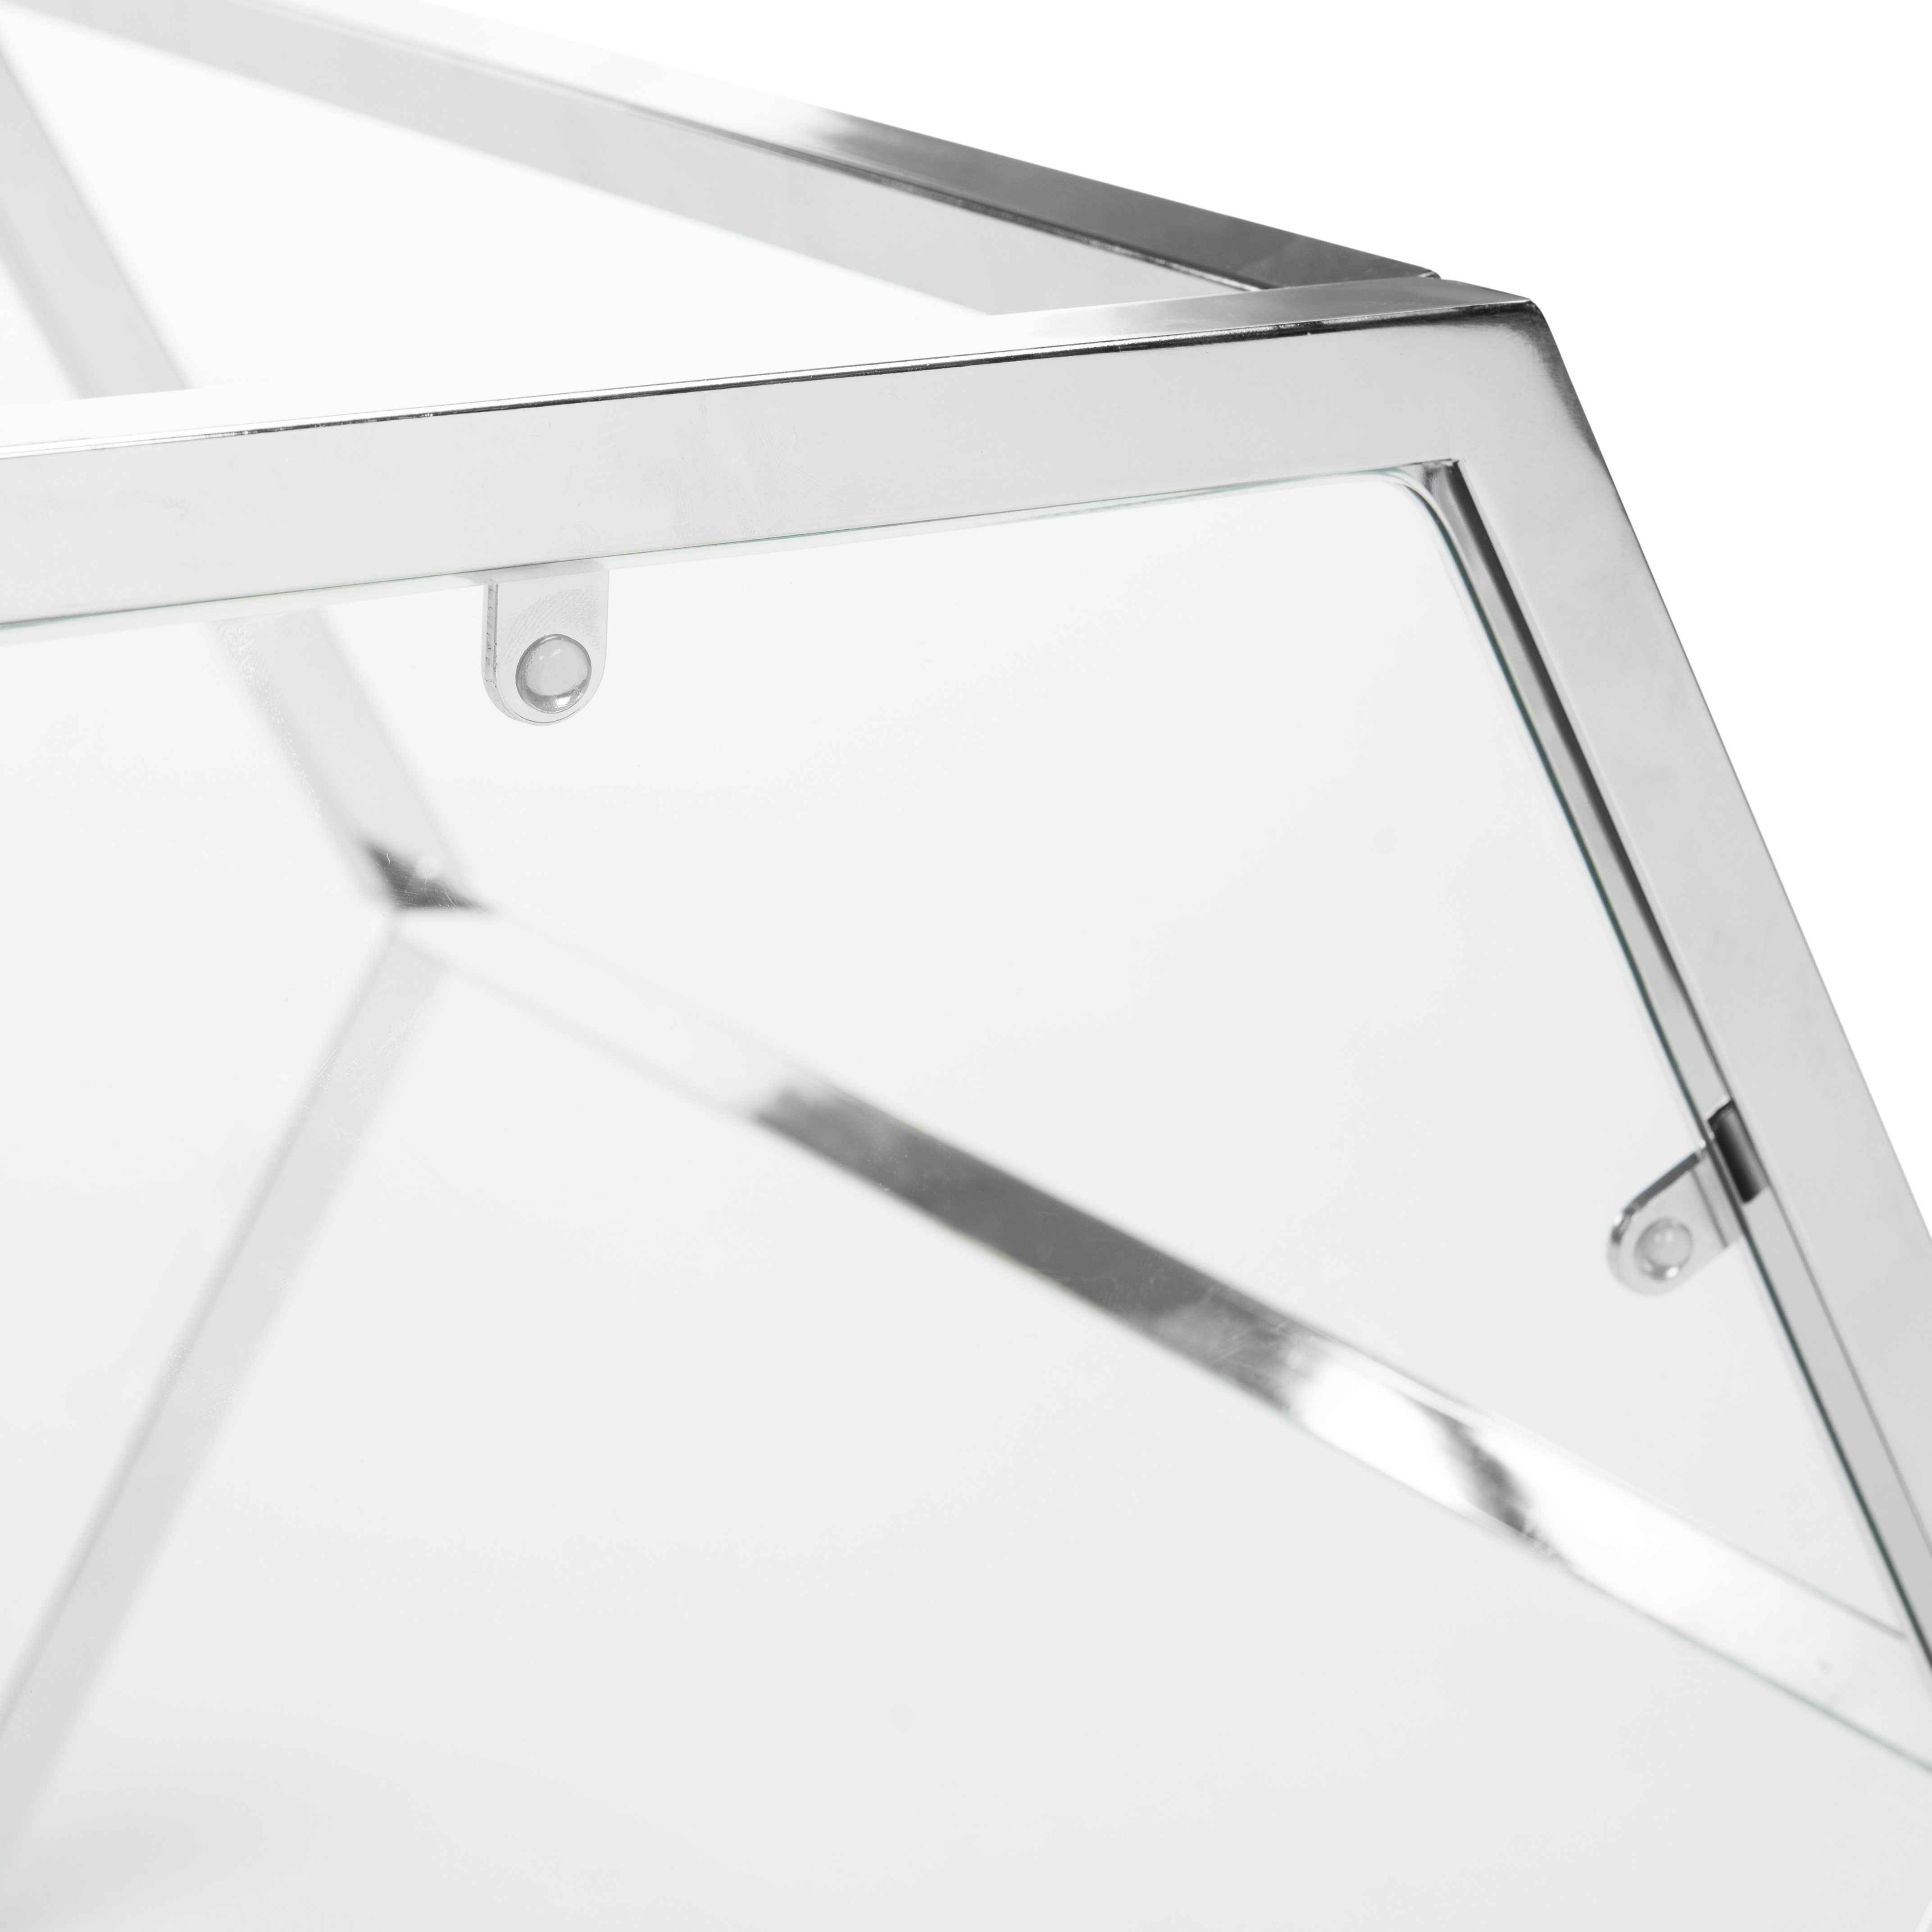 Teagan Glass End Table - Chrome - Arlo Home - Image 6